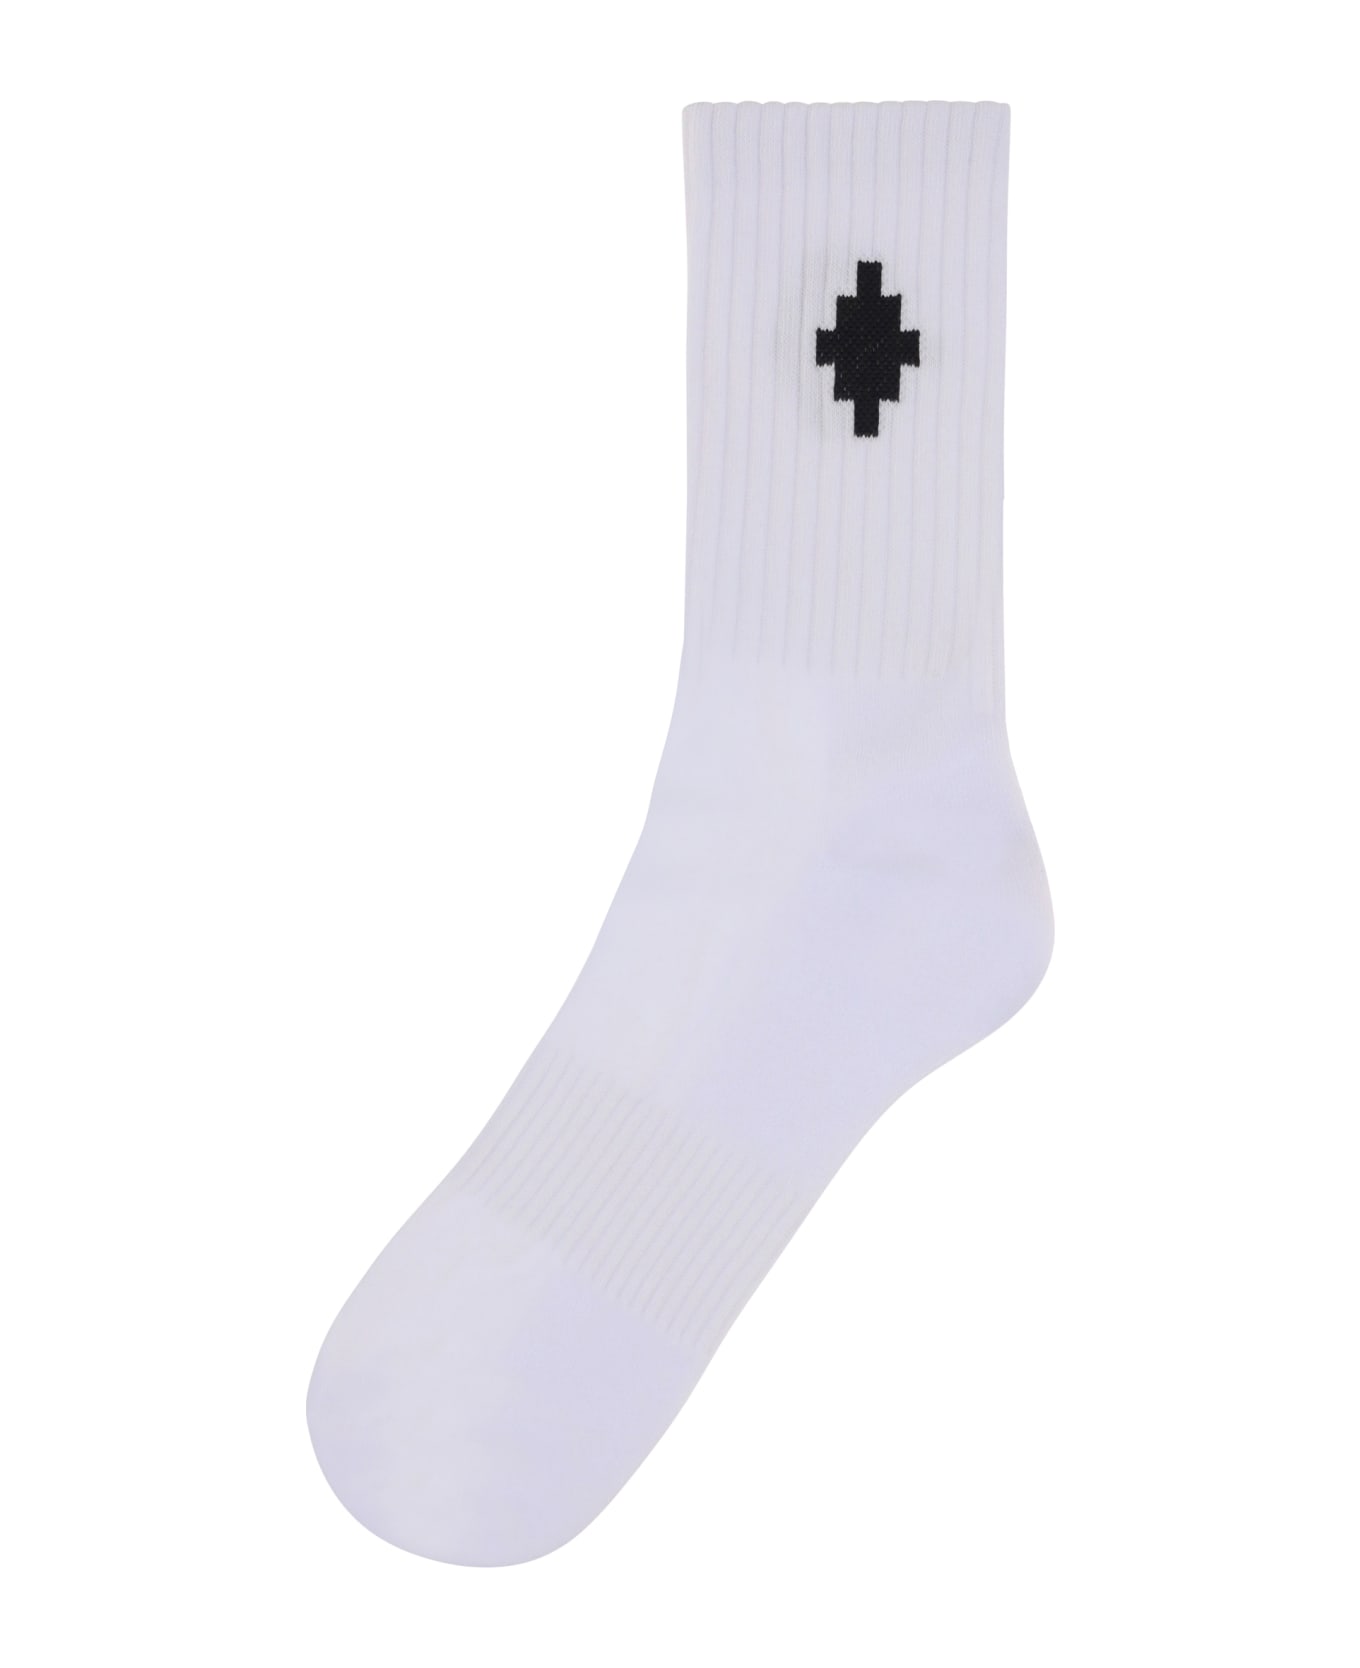 Marcelo Burlon Socks With Cross - White Black